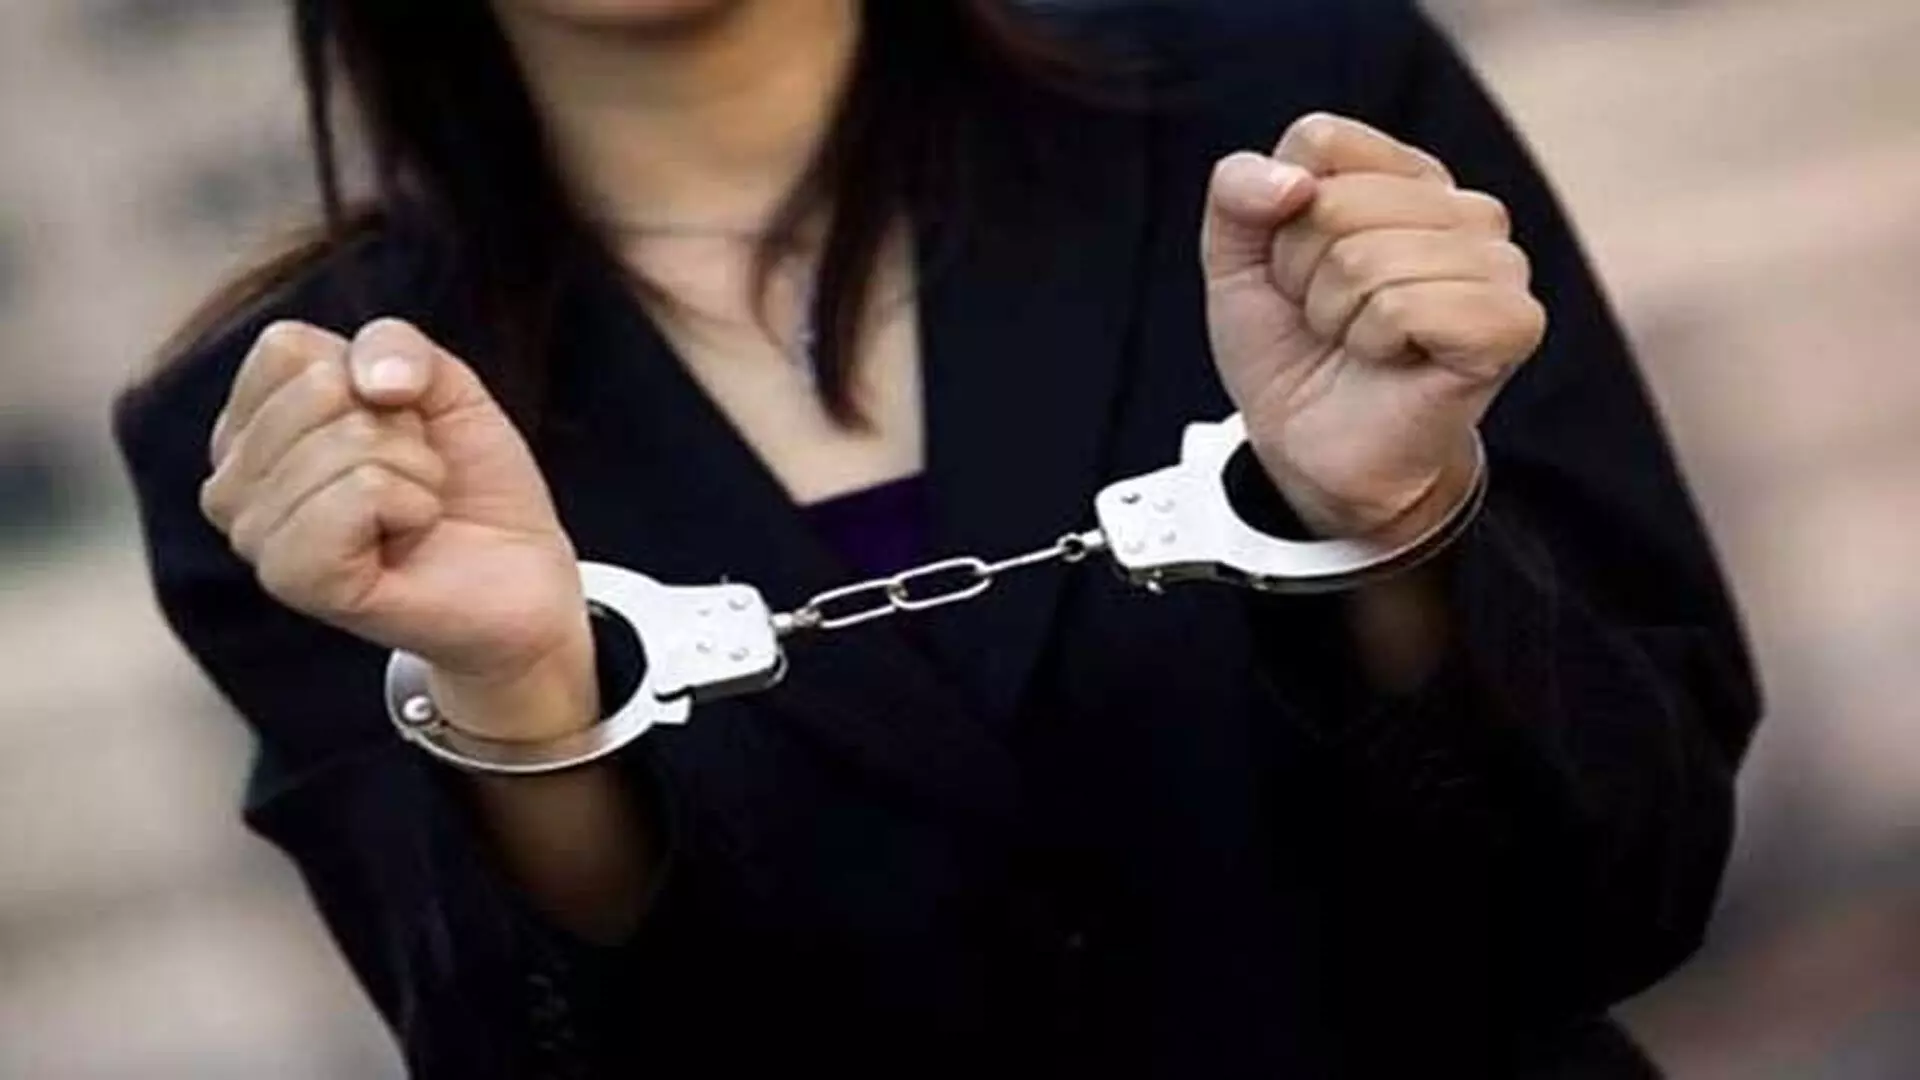 फर्जी मेडिकल सर्टिफिकेट के साथ तेलंगाना की महिला गिरफ्तार